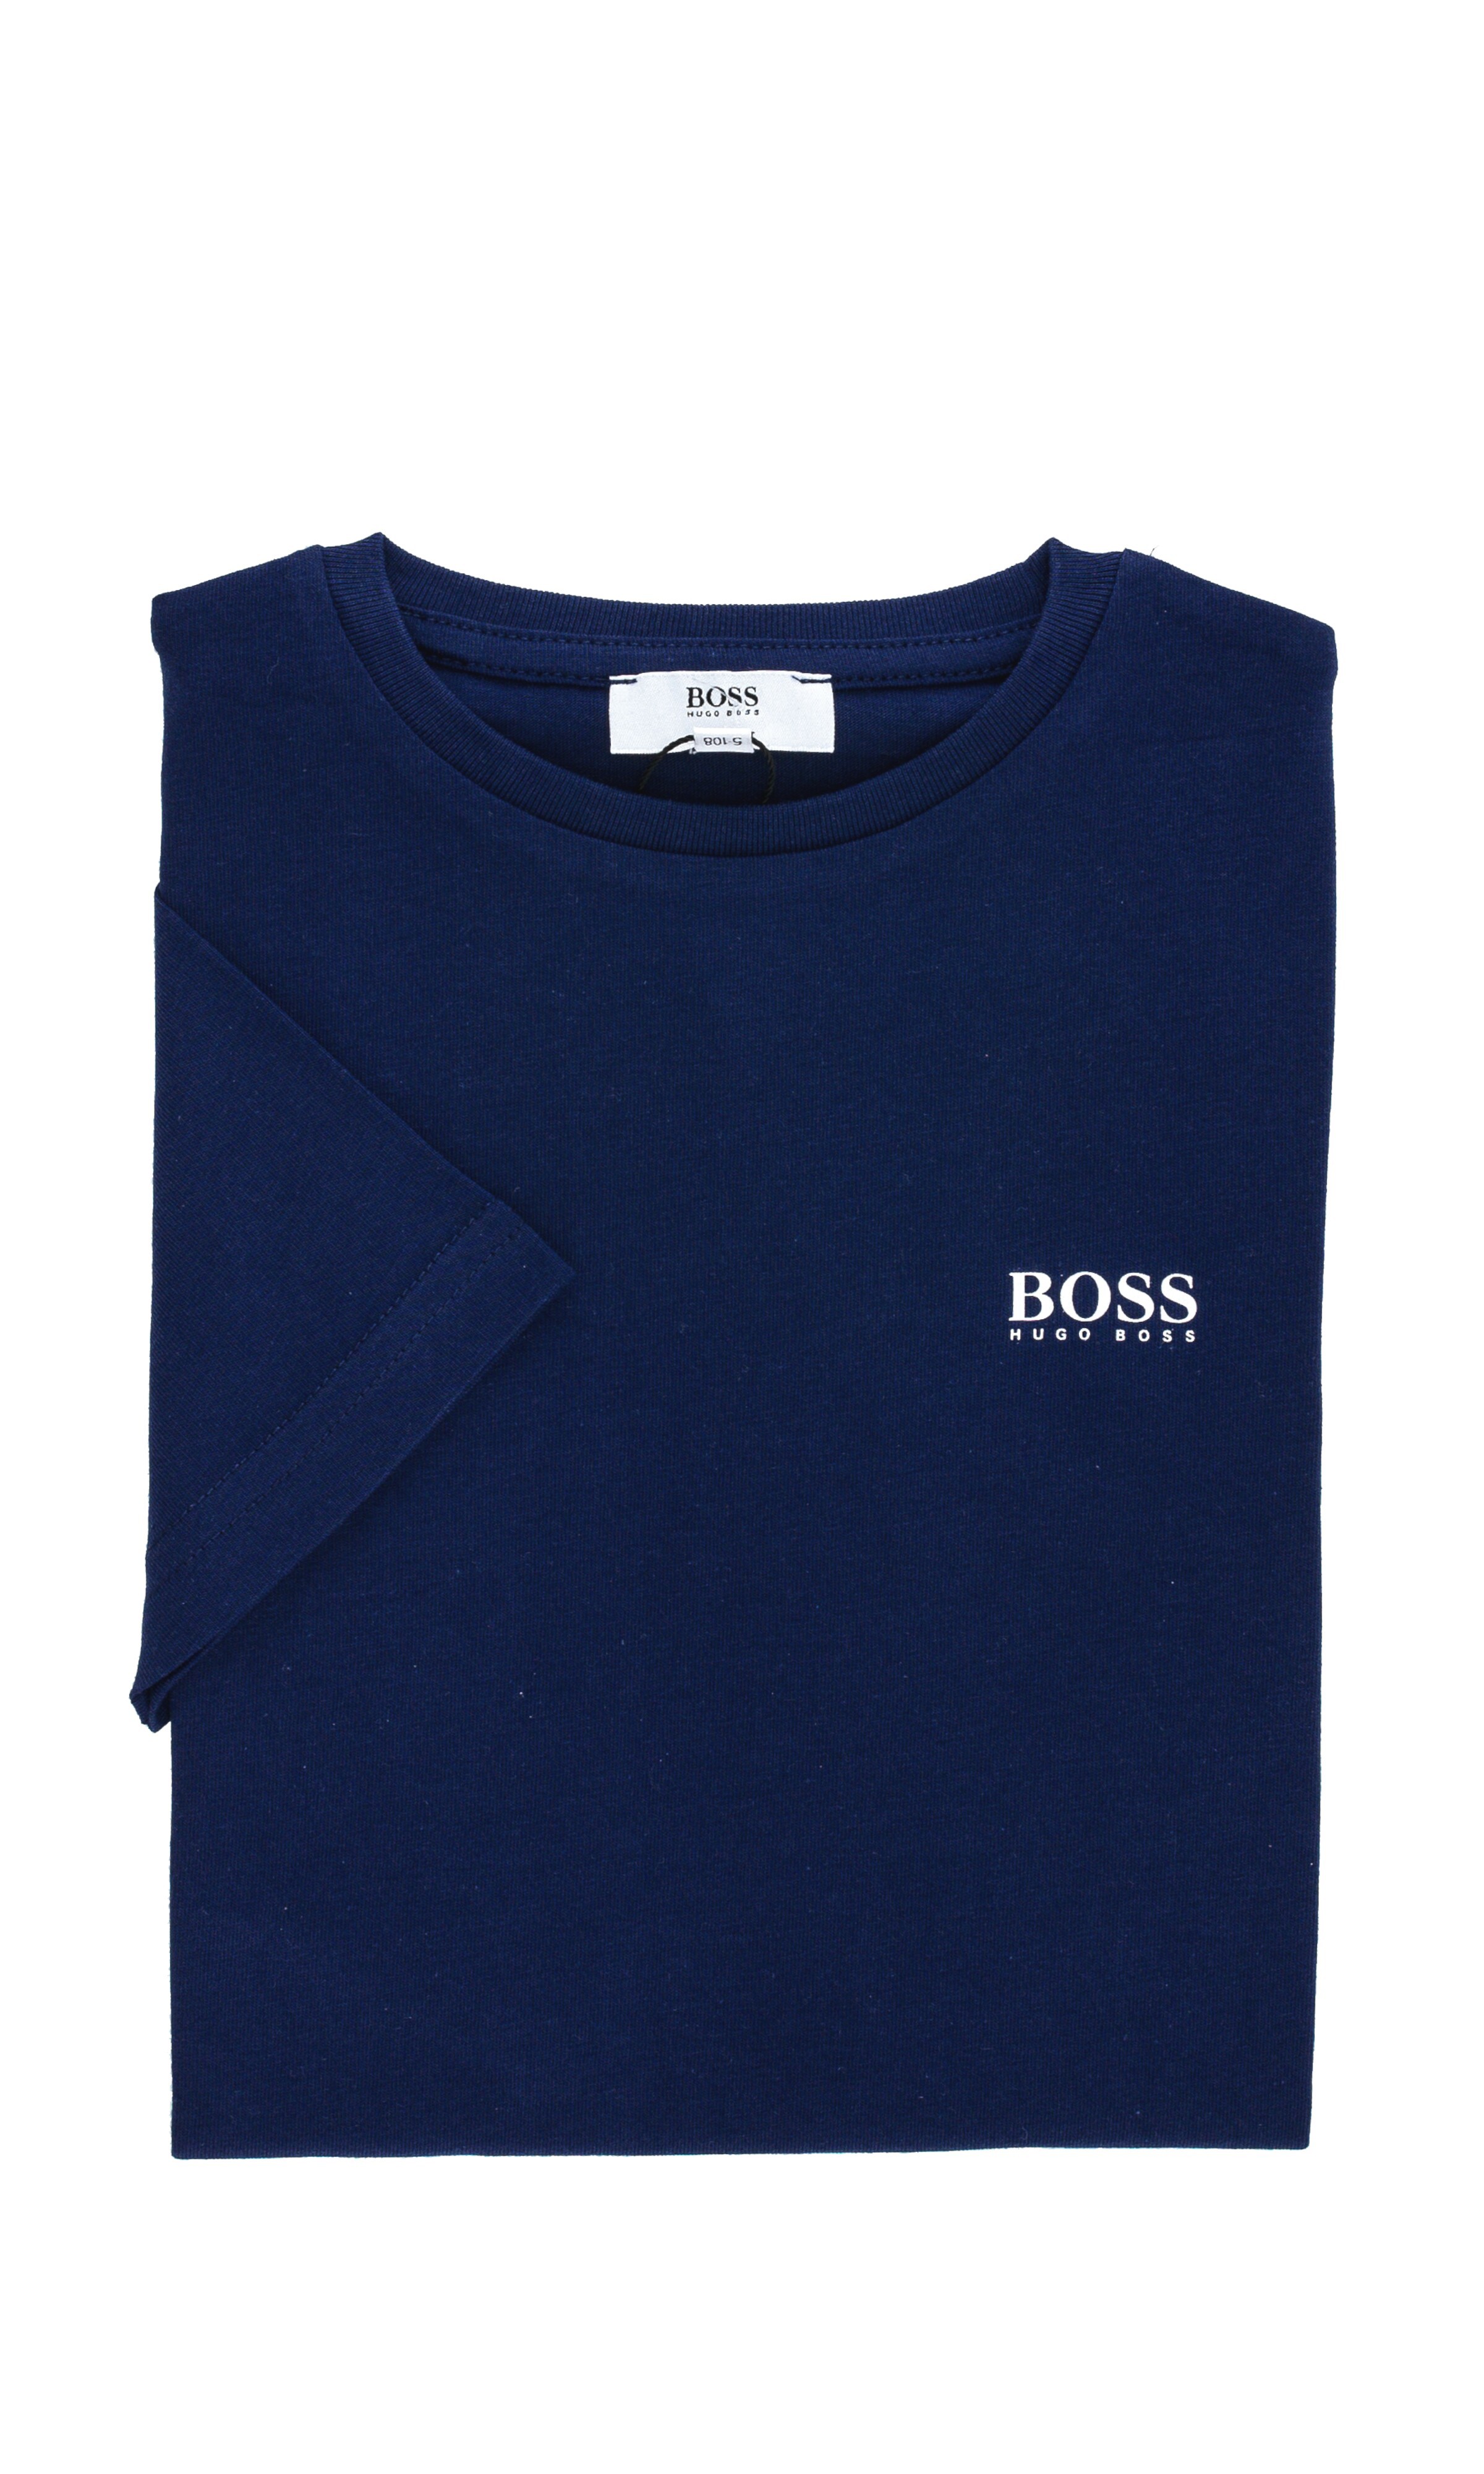 hugo boss tshirt blue